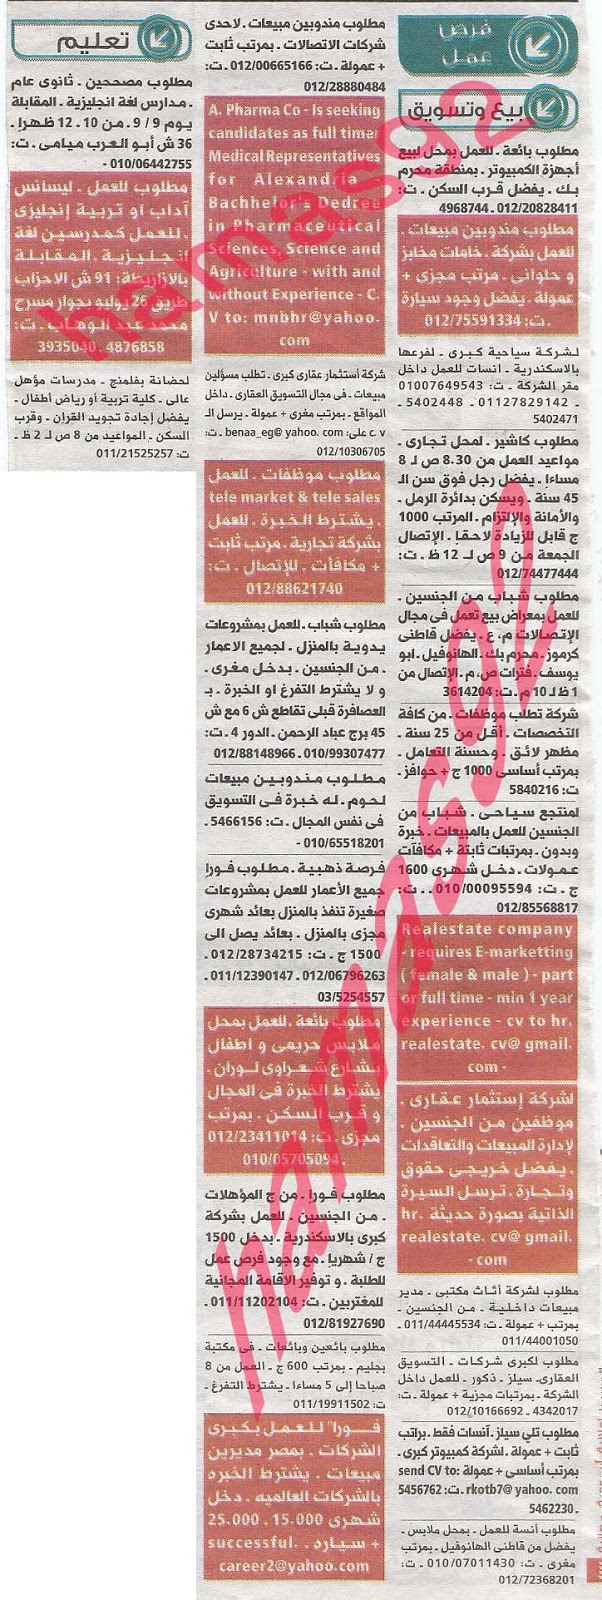 وظائف خالية فى جريدة الوسيط الاسكندرية الجمعة 06-09-2013 %D9%88+%D8%B3+%D8%B3+4